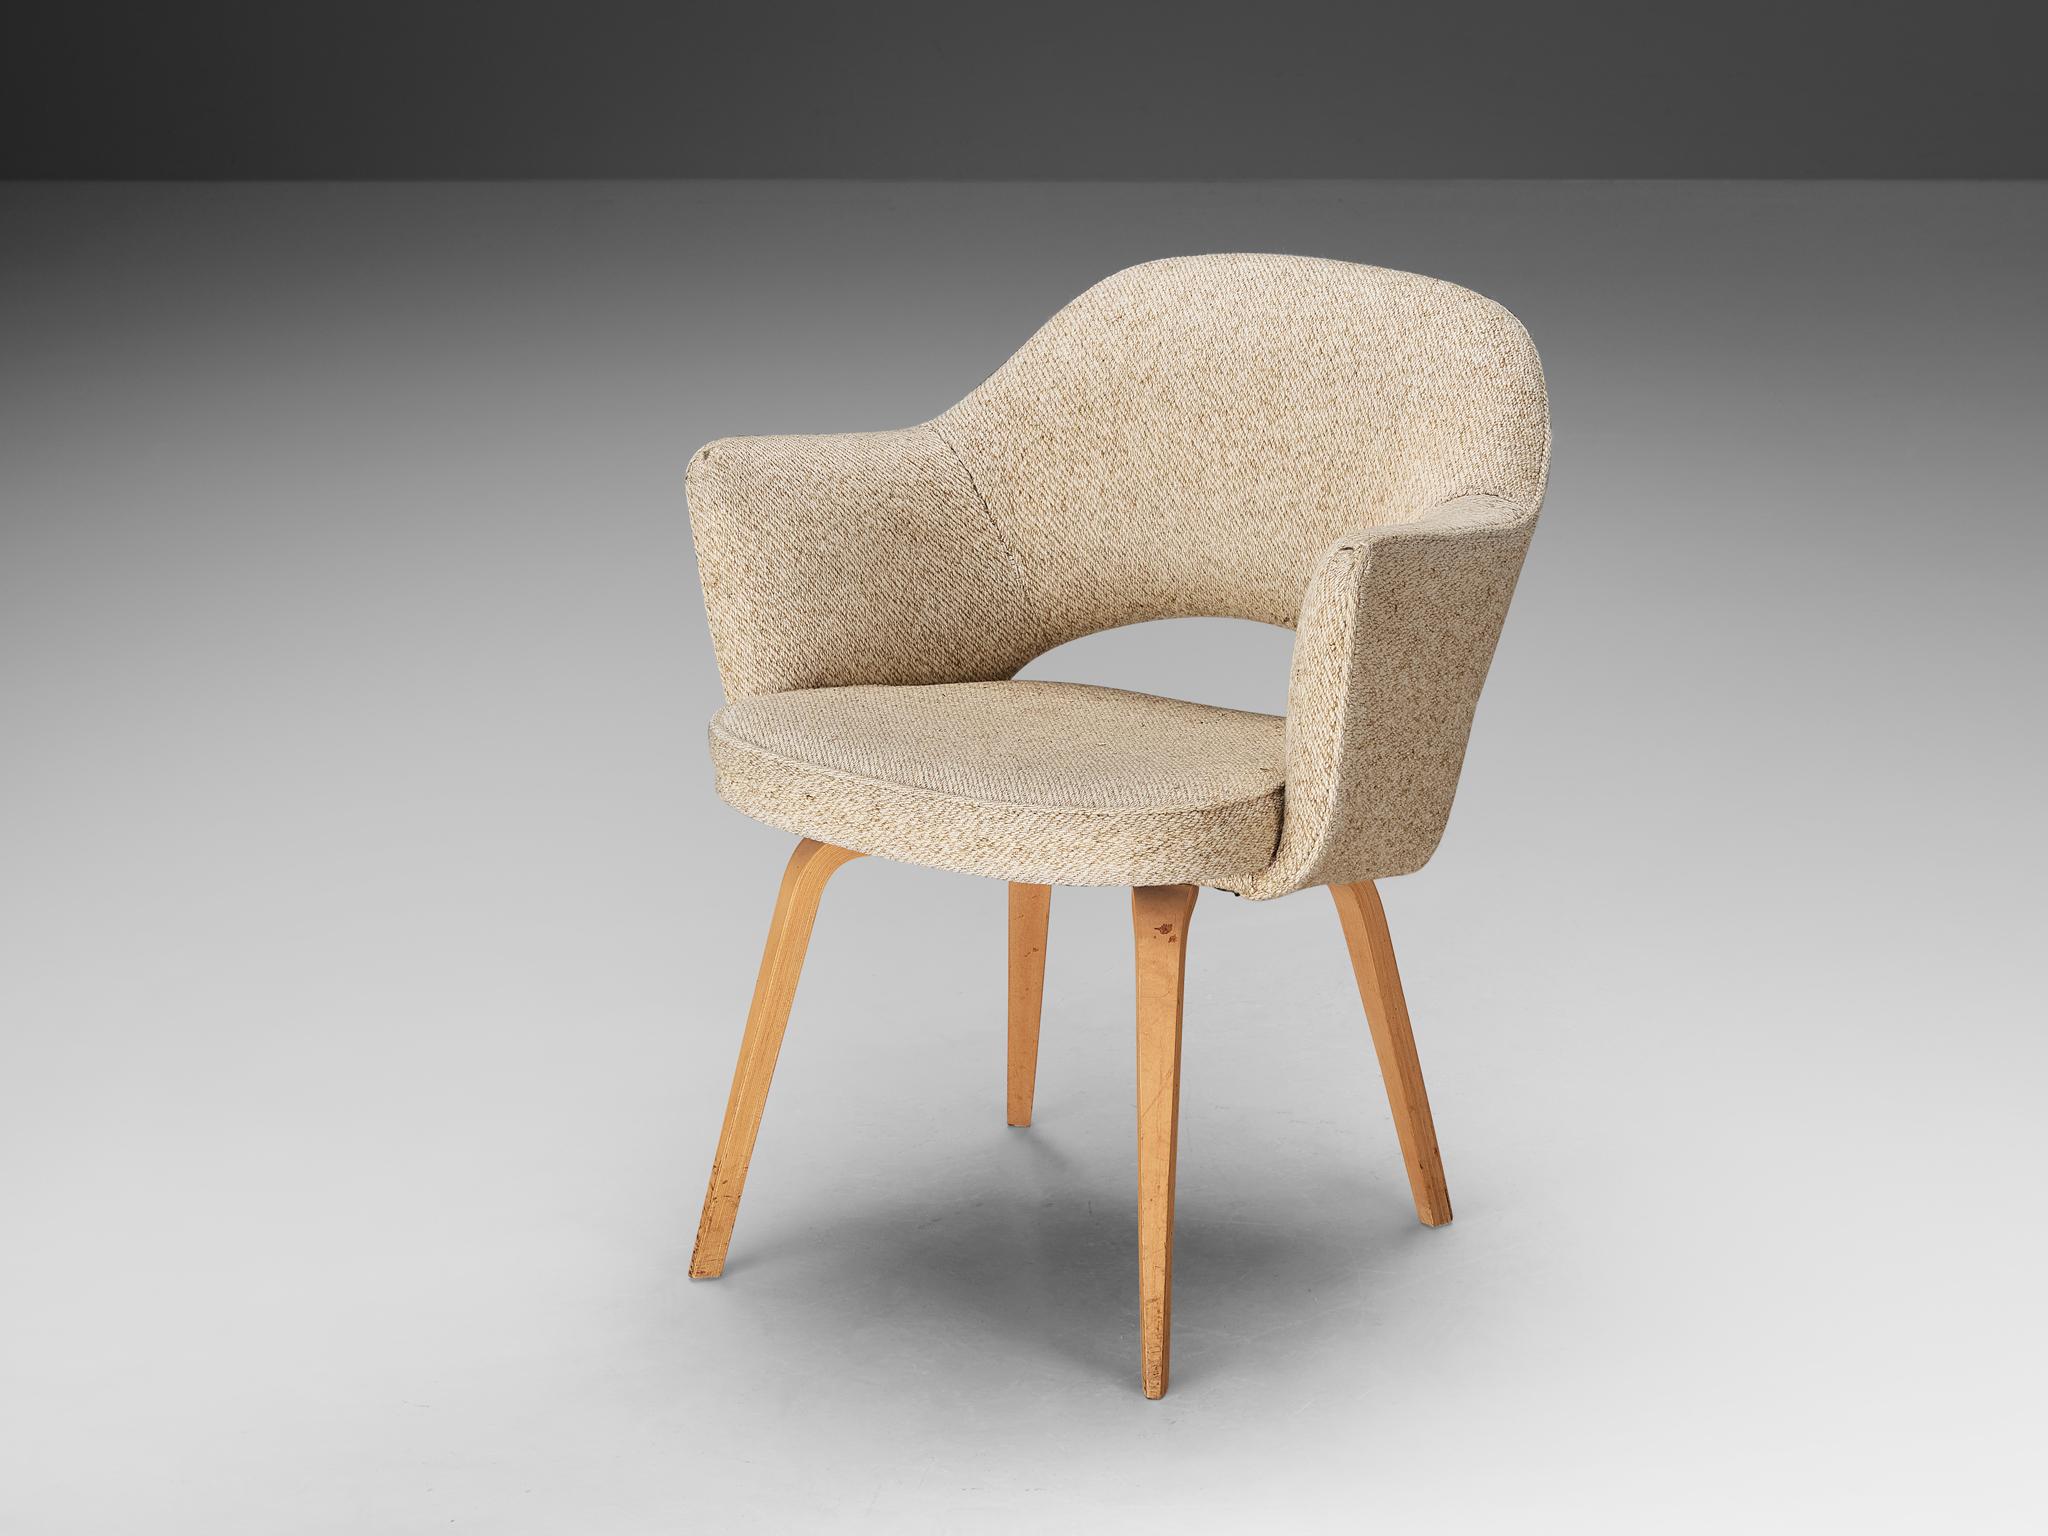 Eero Saarinen pour Knoll International, fauteuil, chêne, tissu, États-Unis, design 1948, production ultérieure

Fauteuil de forme organique conçu par Eero Saarinen. Une forme fluide et sculpturale. Ce design intemporel et polyvalent continue de